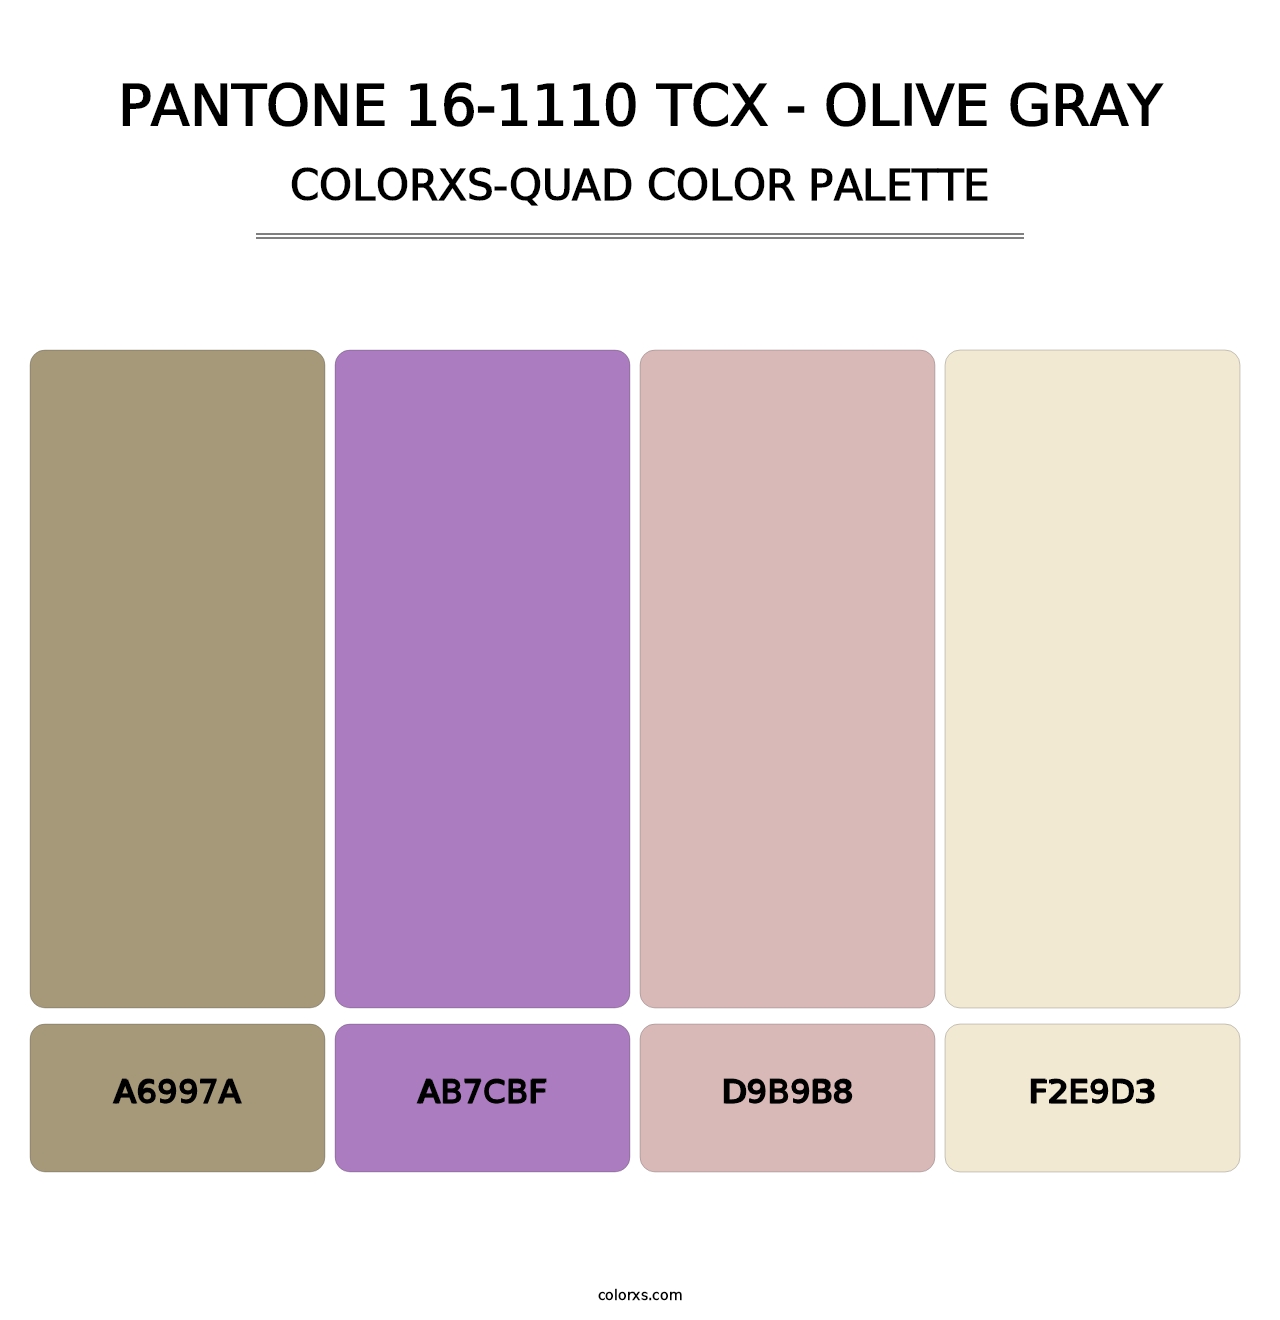 PANTONE 16-1110 TCX - Olive Gray - Colorxs Quad Palette